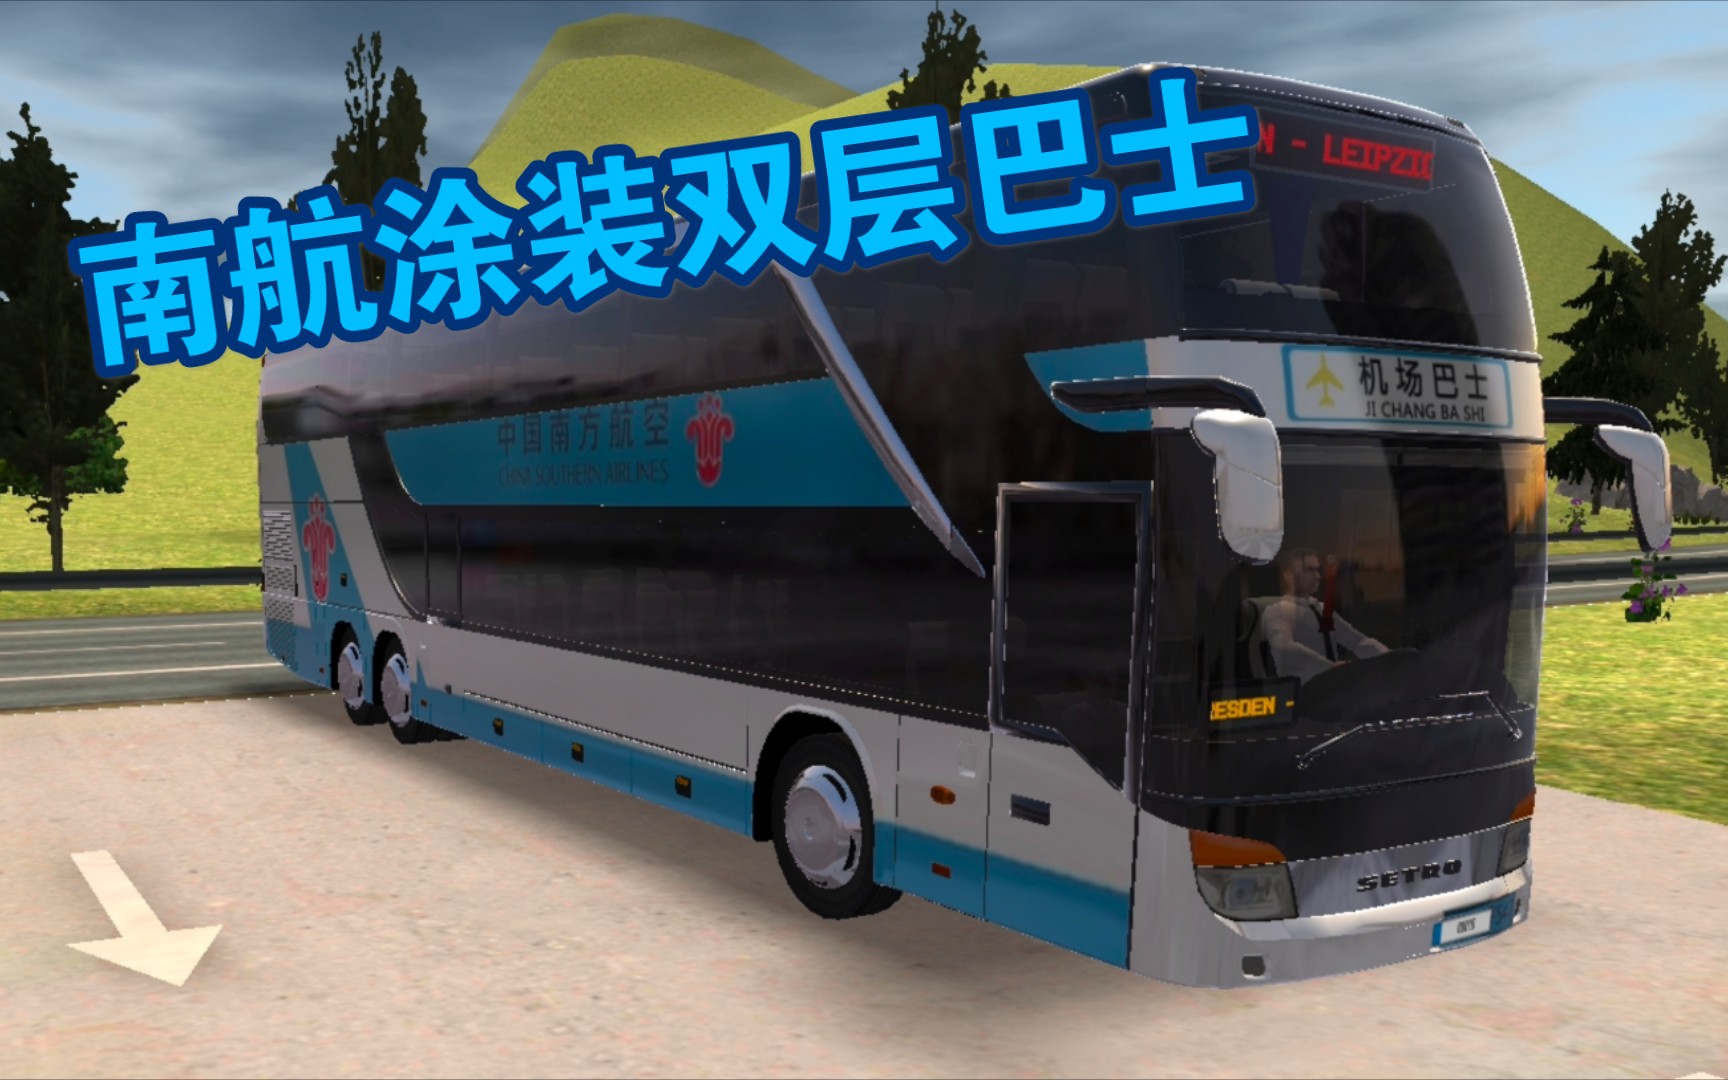 【公交车模拟器】第六十六期:南航涂装双层巴士来了